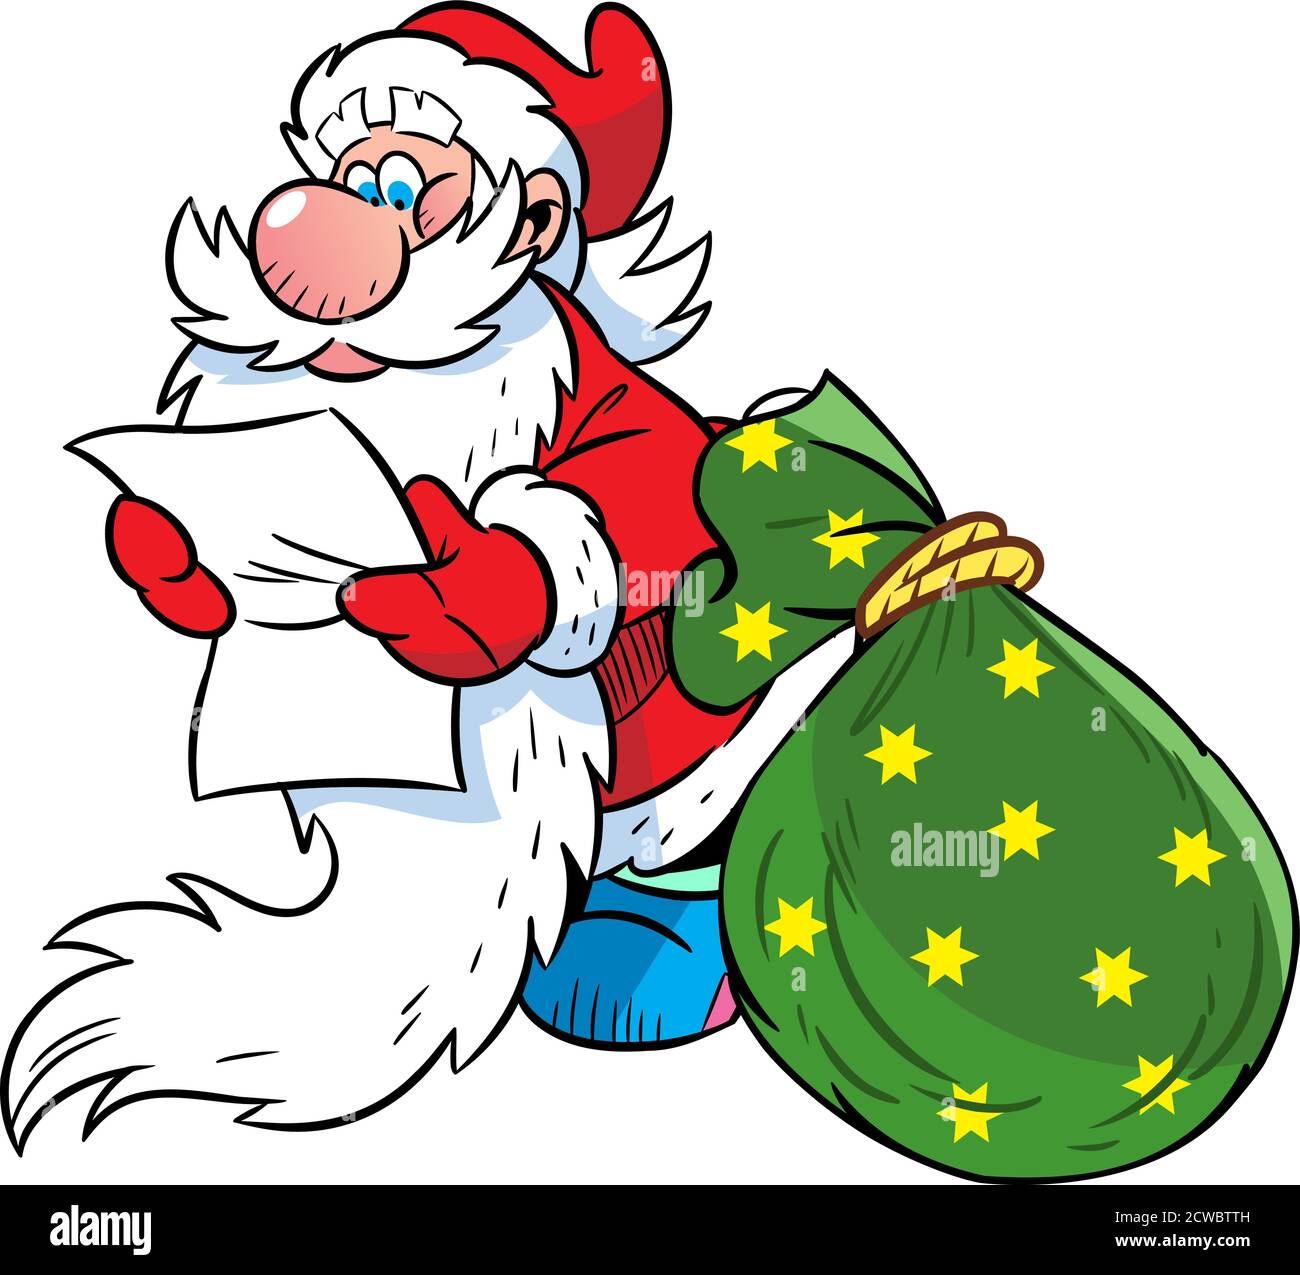 L'illustrazione vettoriale mostra Babbo Natale, che legge una lettera, accanto a lui un sacco con regali di Natale Illustrazione Vettoriale